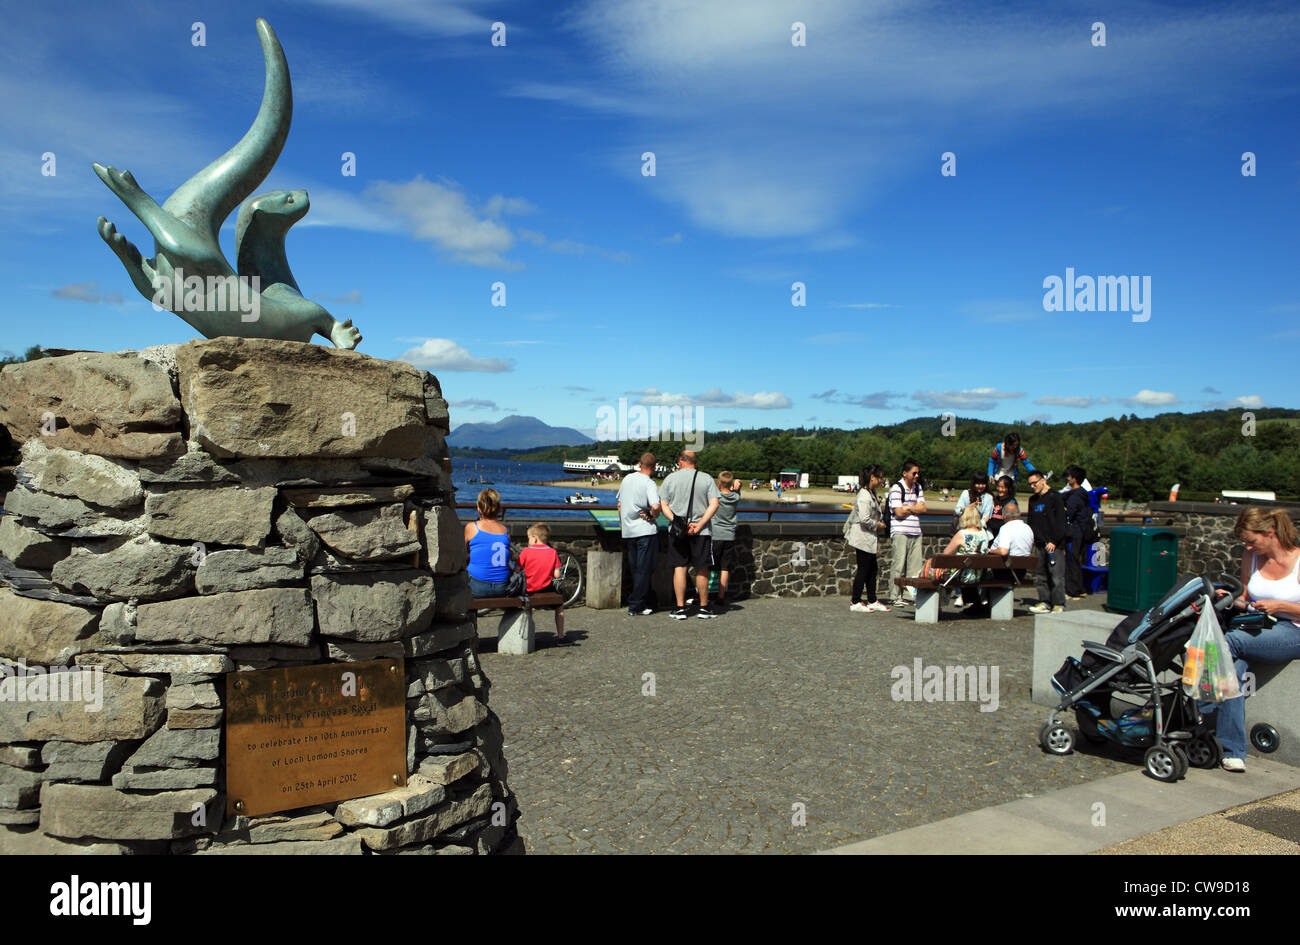 Besucher und Familien in der Nähe der Otter-Skulptur vor dem Loch Lomond Sealife Centre am Loch Lomond Shores in Schottland Stockfoto